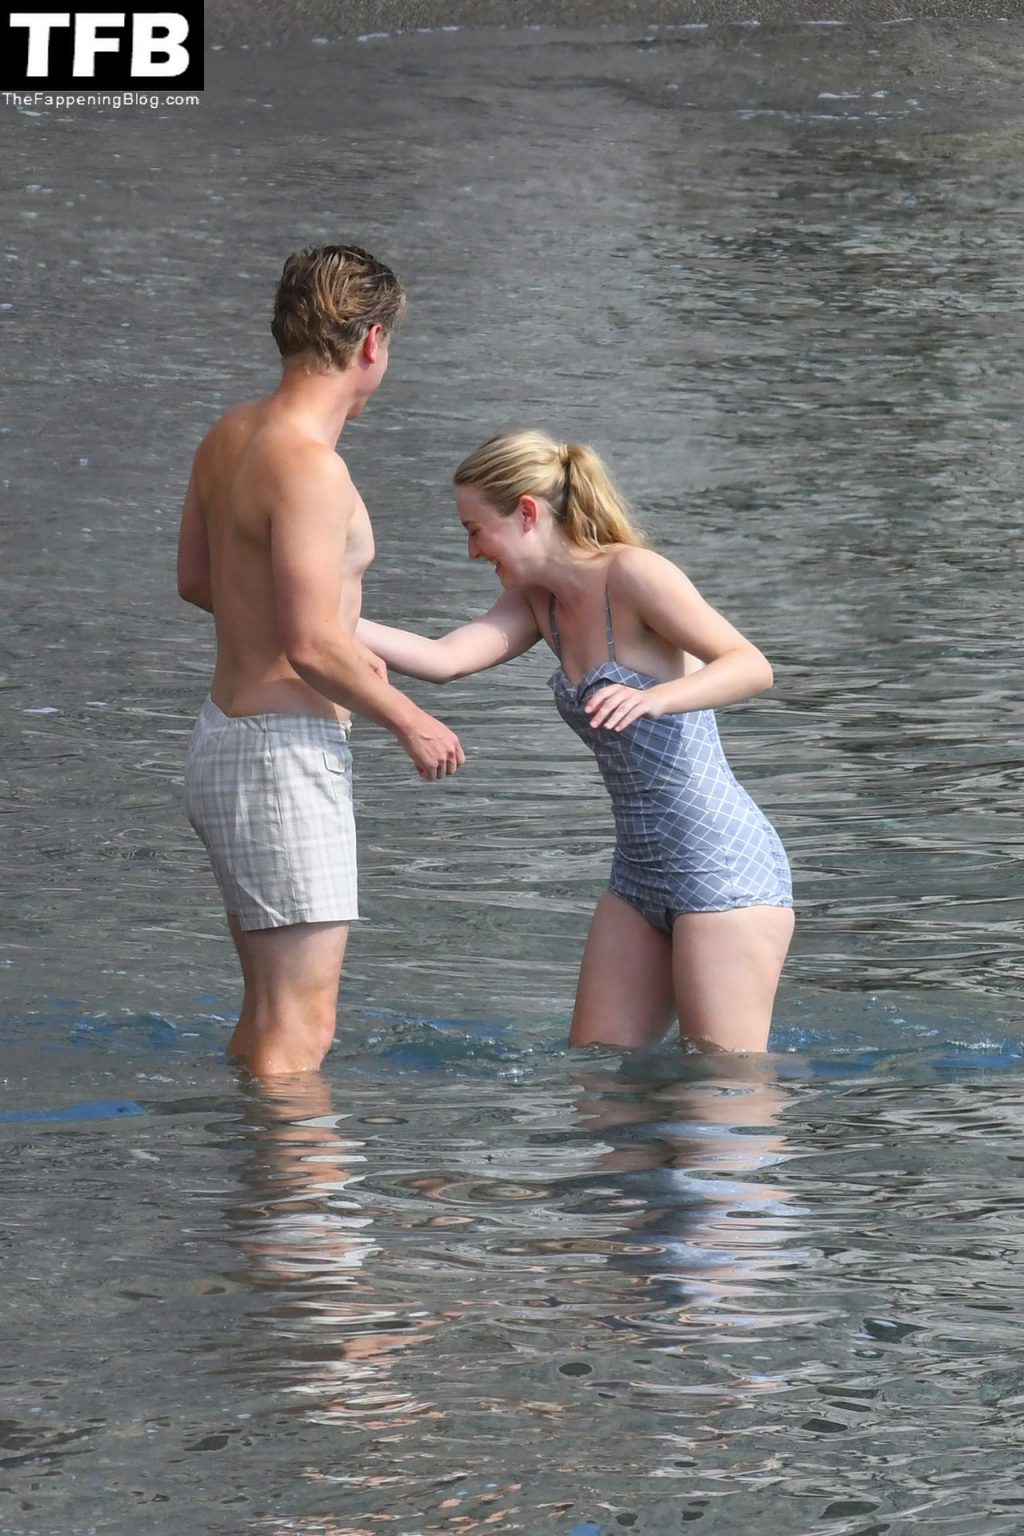 Dakota Fanning Look Cute in a Swimsuit Filming “Ripley” in Strani (48 Photos)